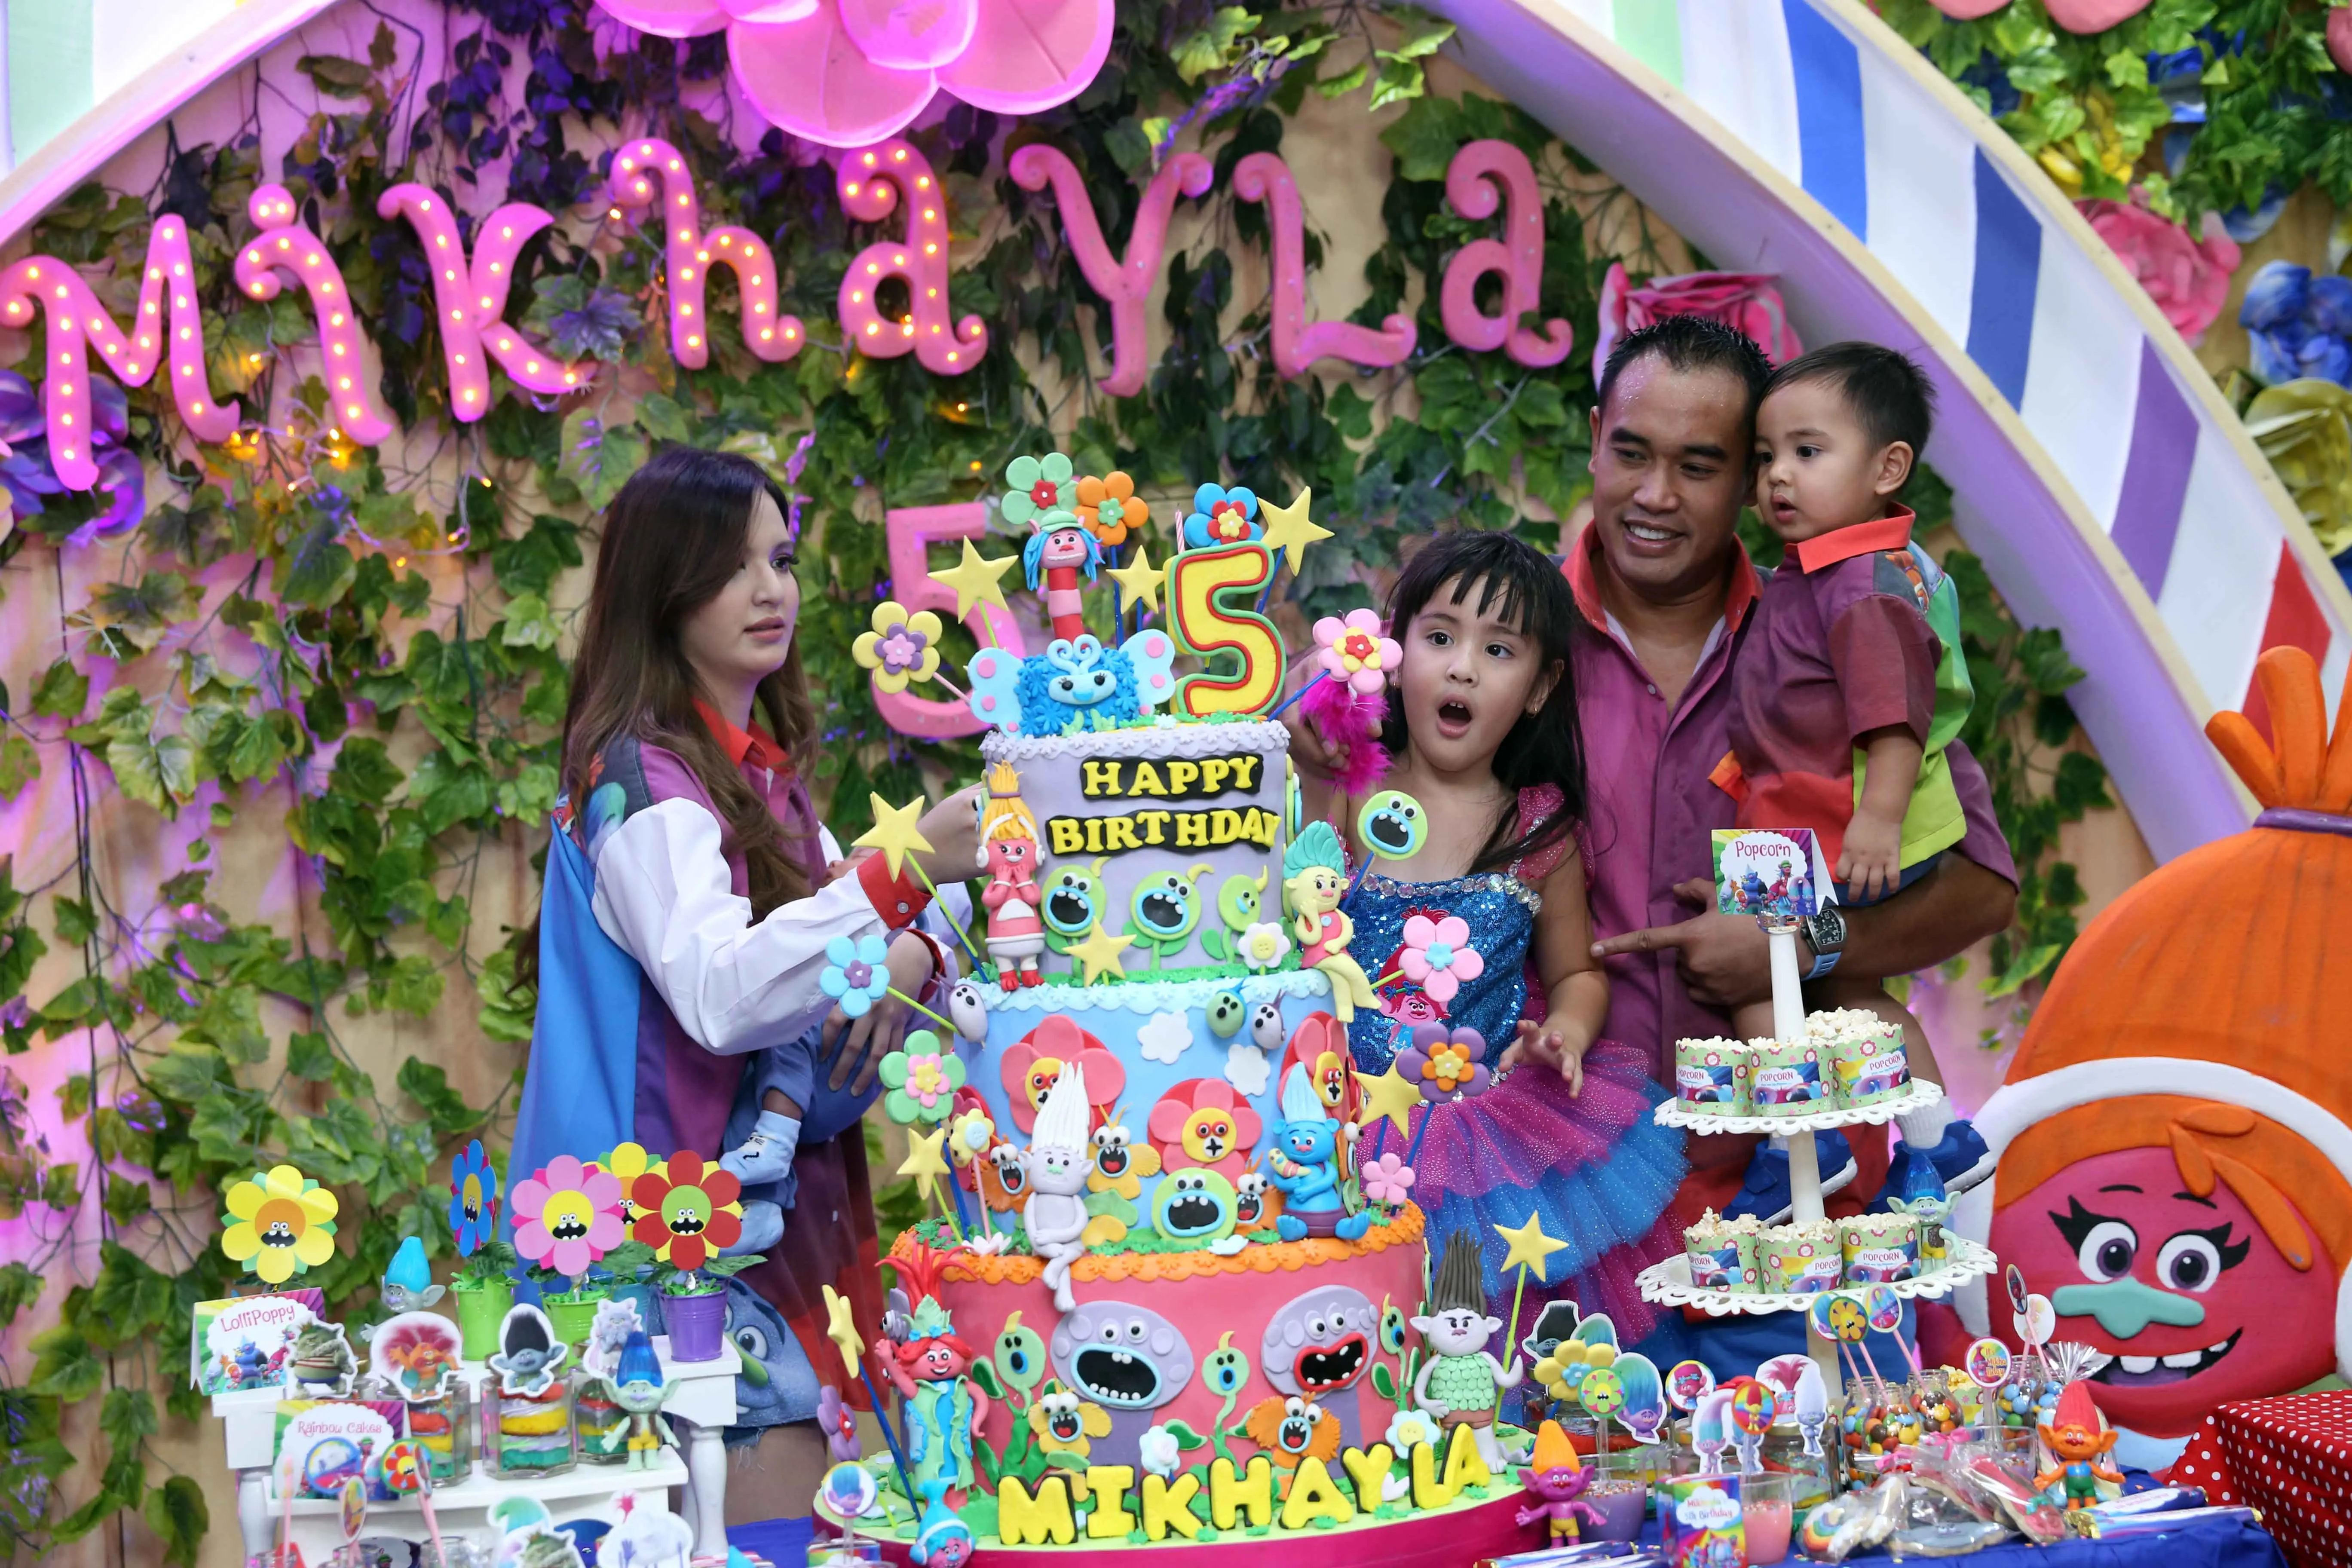 Pasangan Nia Ramadhani dan Ardie Bakrie baru saja menggelar pesta ulang tahun anak pertamanya. Ultah ke-5, Mikhayla Bakrie berlangsung meriah dengan mengusung tema Trolls pada Jumat (2/6/2017). (Nurwahyunan/Bintang.com)